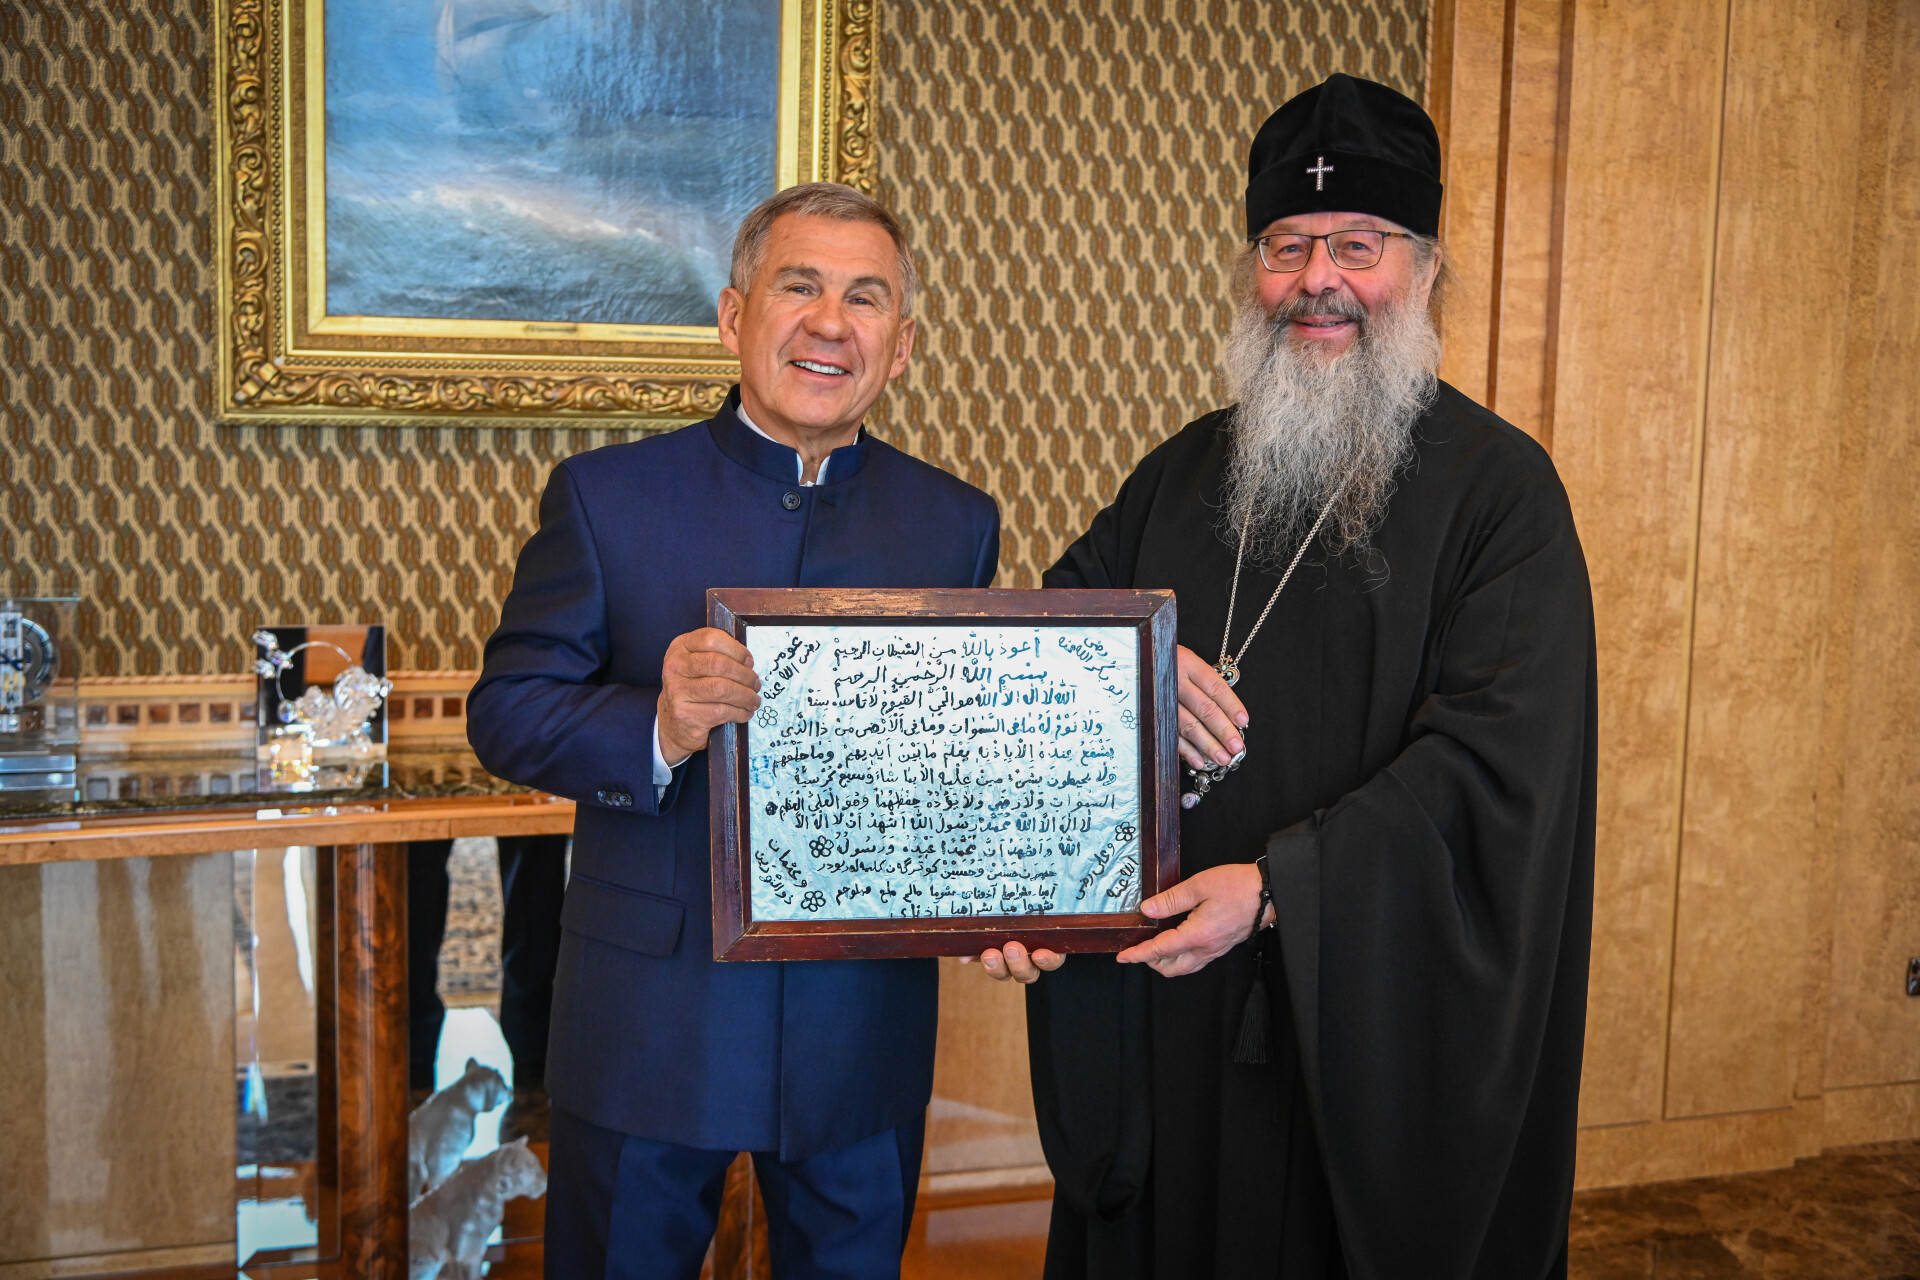 Митрополит Кирилл подарил Минниханову столетний редкий рукописный шамаиль на стекле